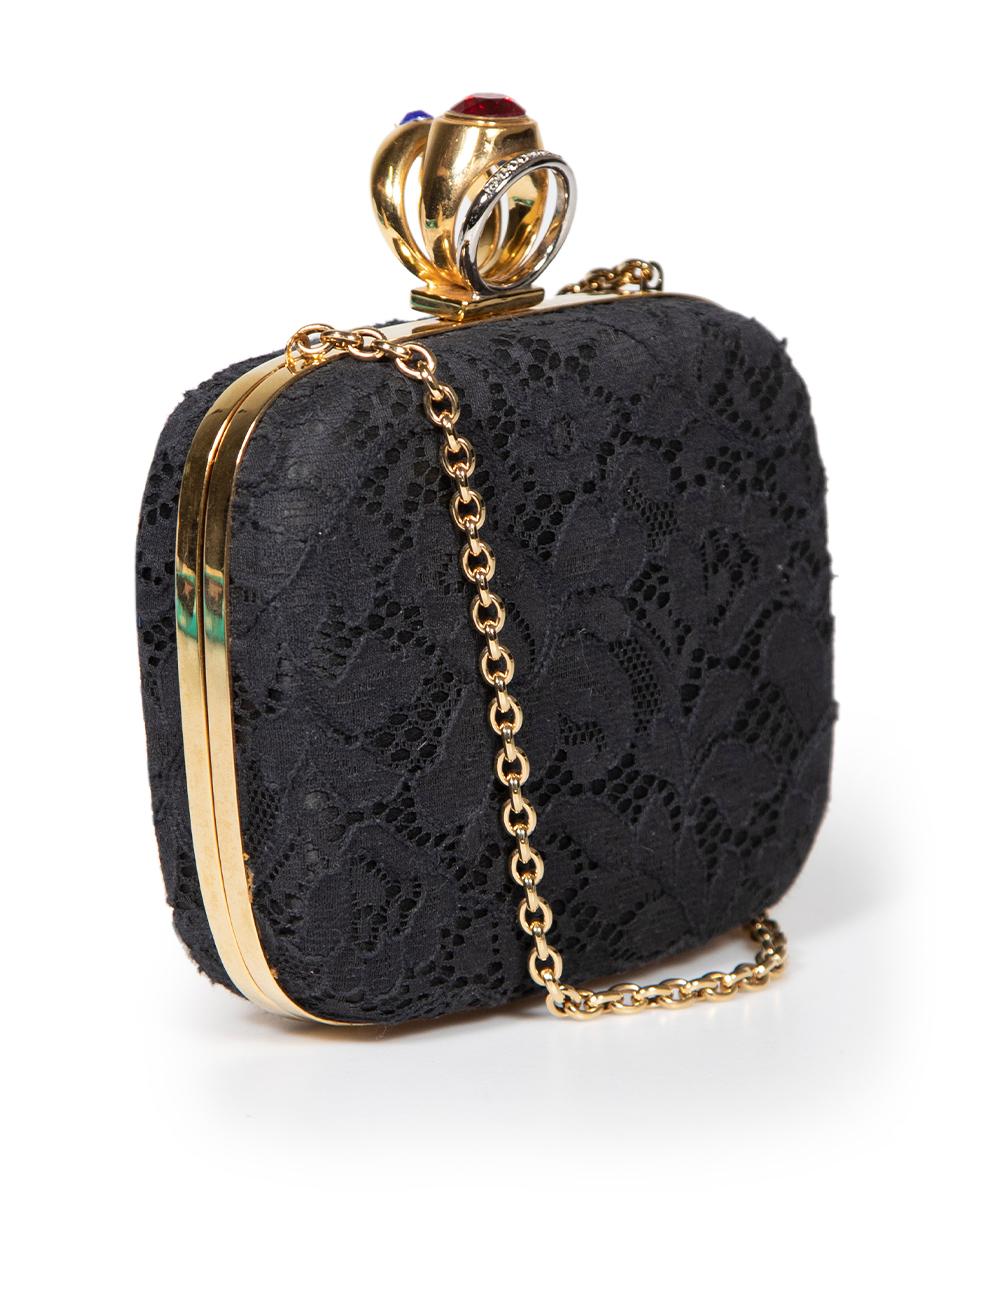 CONDIT ist sehr gut. Minimale Abnutzung der Tasche ist offensichtlich. Minimale Abnutzungserscheinungen an den Metallrändern mit leichten Kratzern an diesem gebrauchten Dolce & Gabbana Designer-Wiederverkaufsartikel.
 
 
 
 Einzelheiten
 
 
